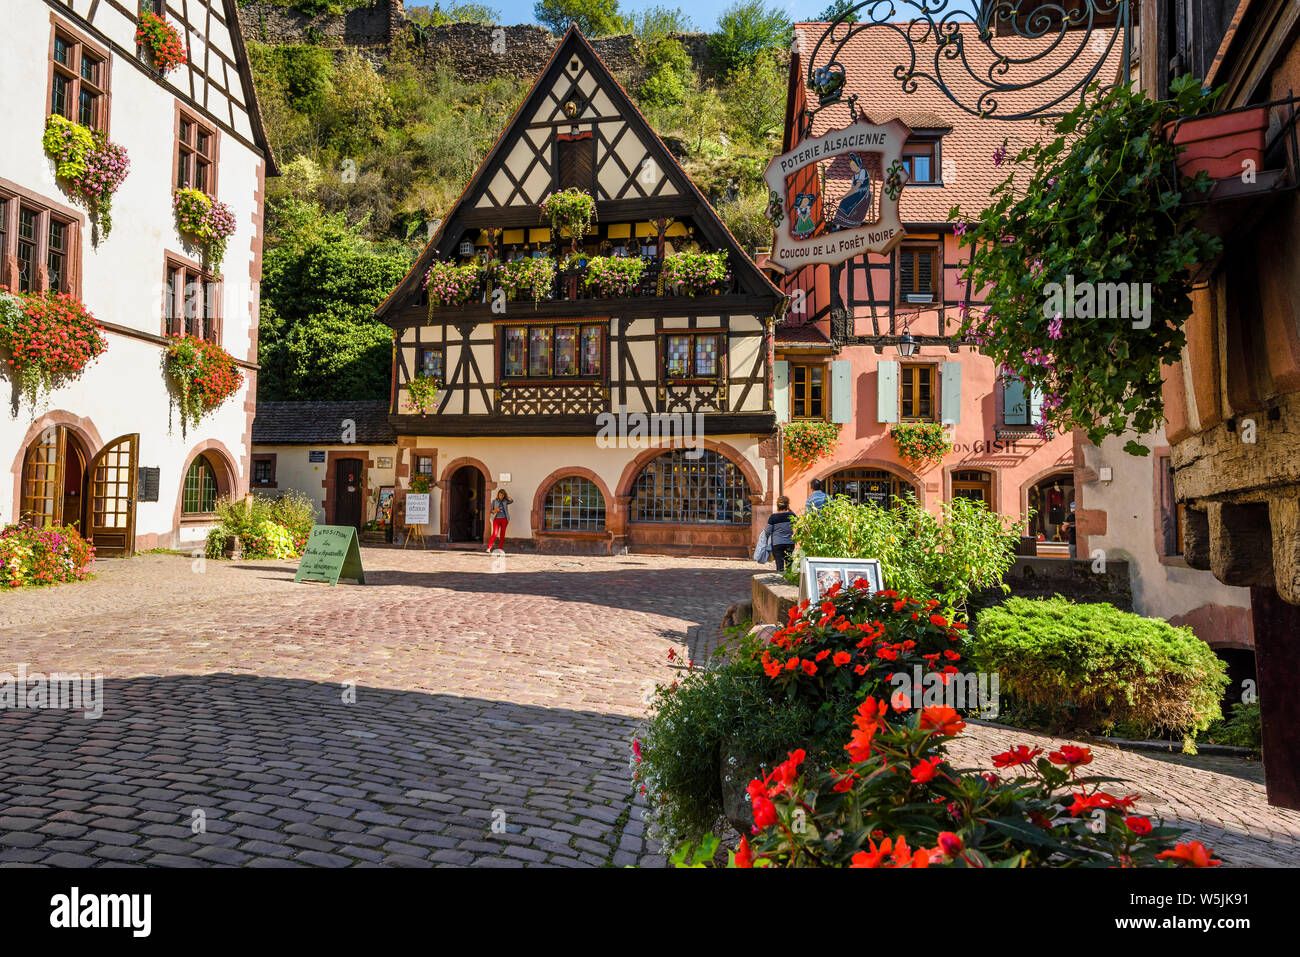 La pintoresca plaza con casas de entramado de madera en la antigua ciudad de Kaysersberg, La Ruta del Vino de Alsacia, Francia, destino turístico con carácter medieval Foto de stock